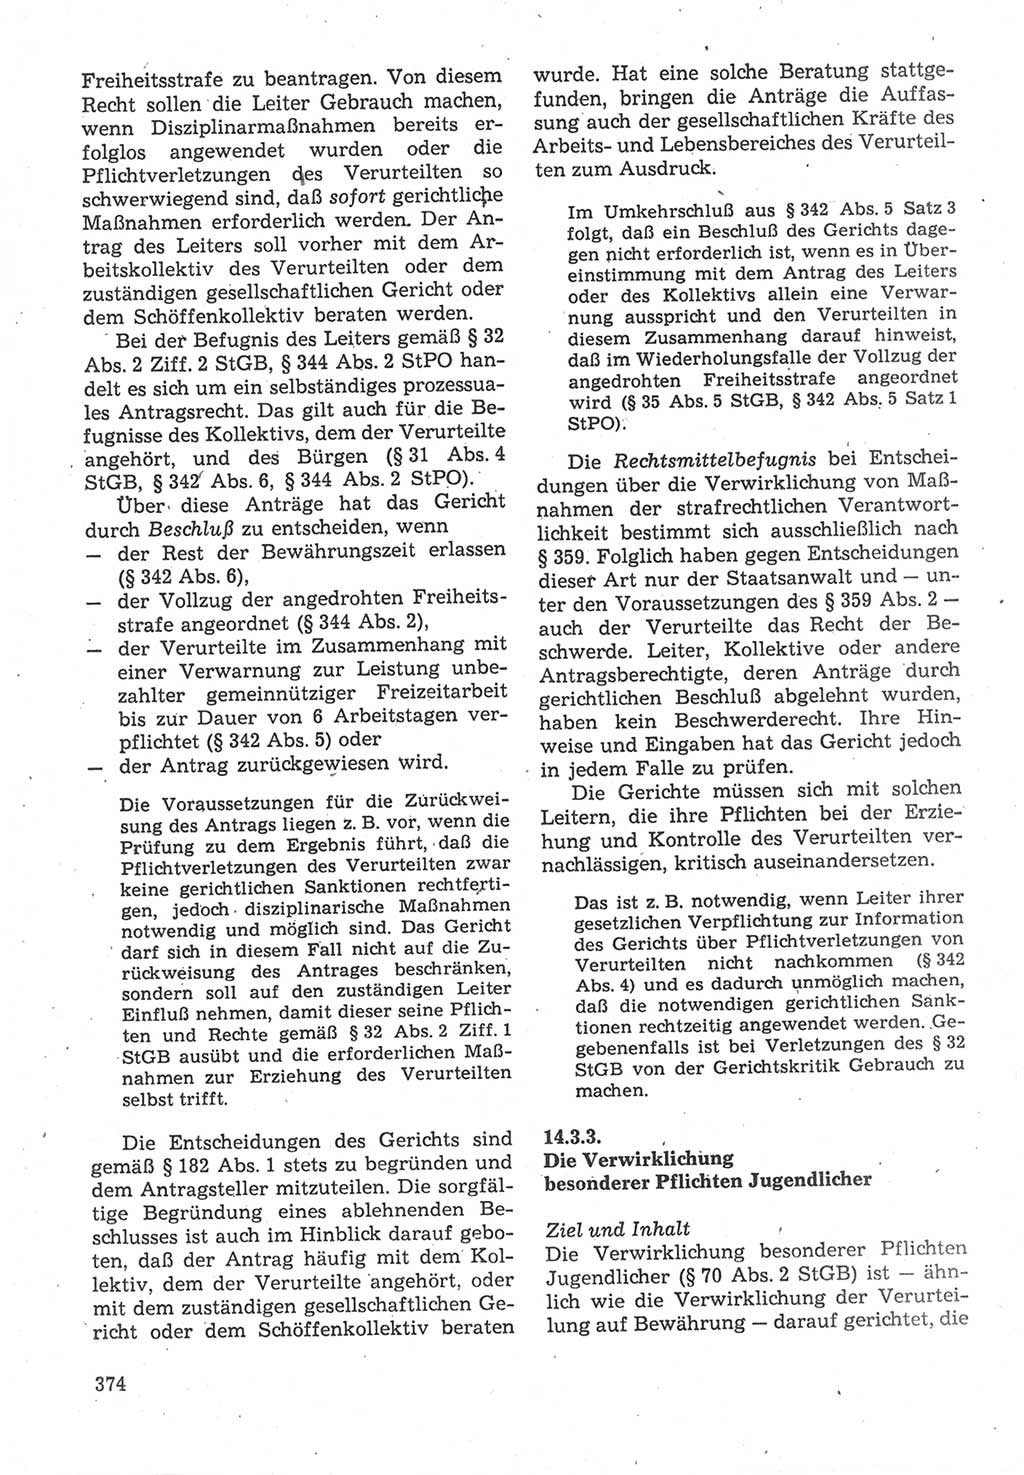 Strafverfahrensrecht [Deutsche Demokratische Republik (DDR)], Lehrbuch 1987, Seite 374 (Strafverf.-R. DDR Lb. 1987, S. 374)